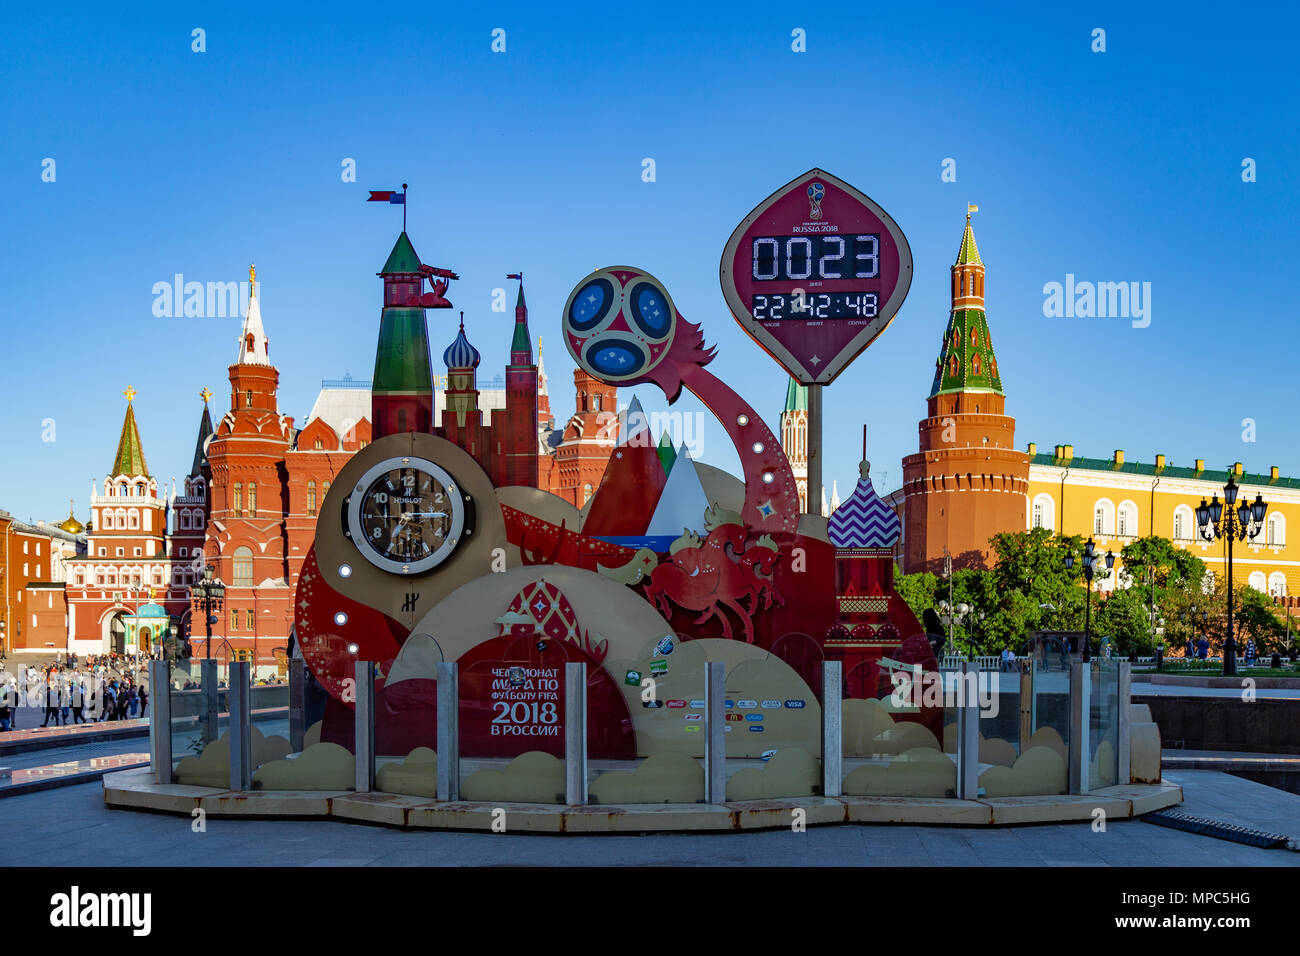 Moscou, Russie - 21 mai 2018 : une montre avec un compte à rebours des  jours, heures et minutes pour le début de la Coupe du Monde de la FIFA 2018  en